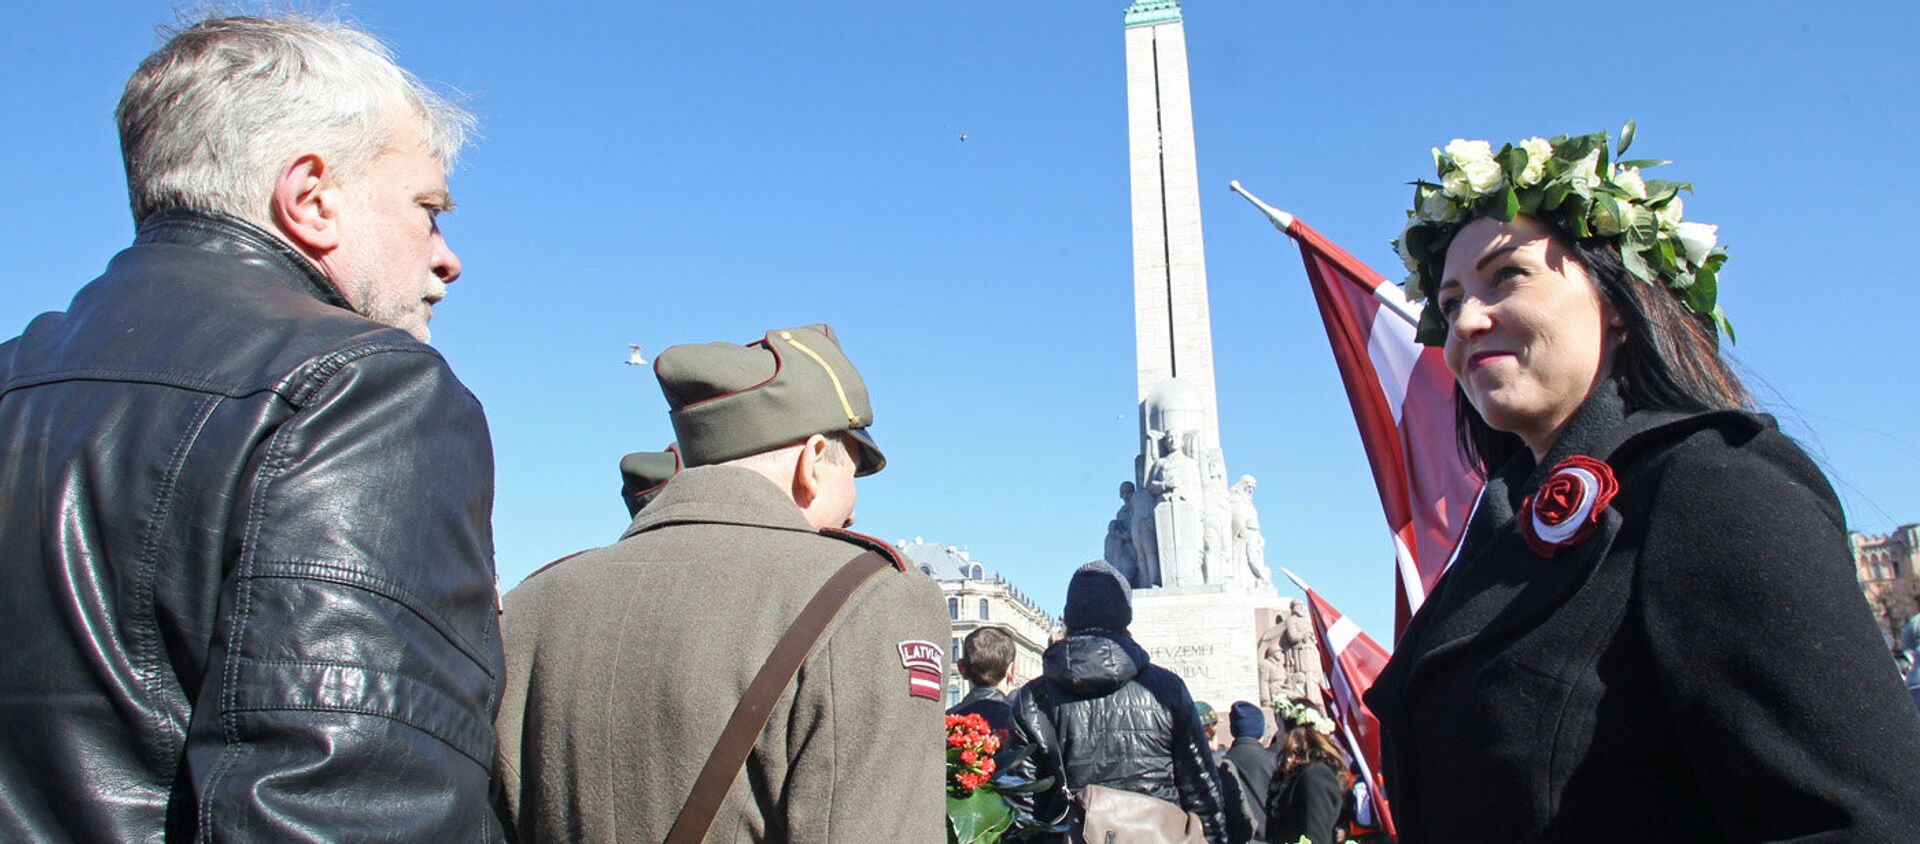 Мероприятия Дня легионеров в Риге 16 марта 2017 года - Sputnik Латвия, 1920, 13.03.2019